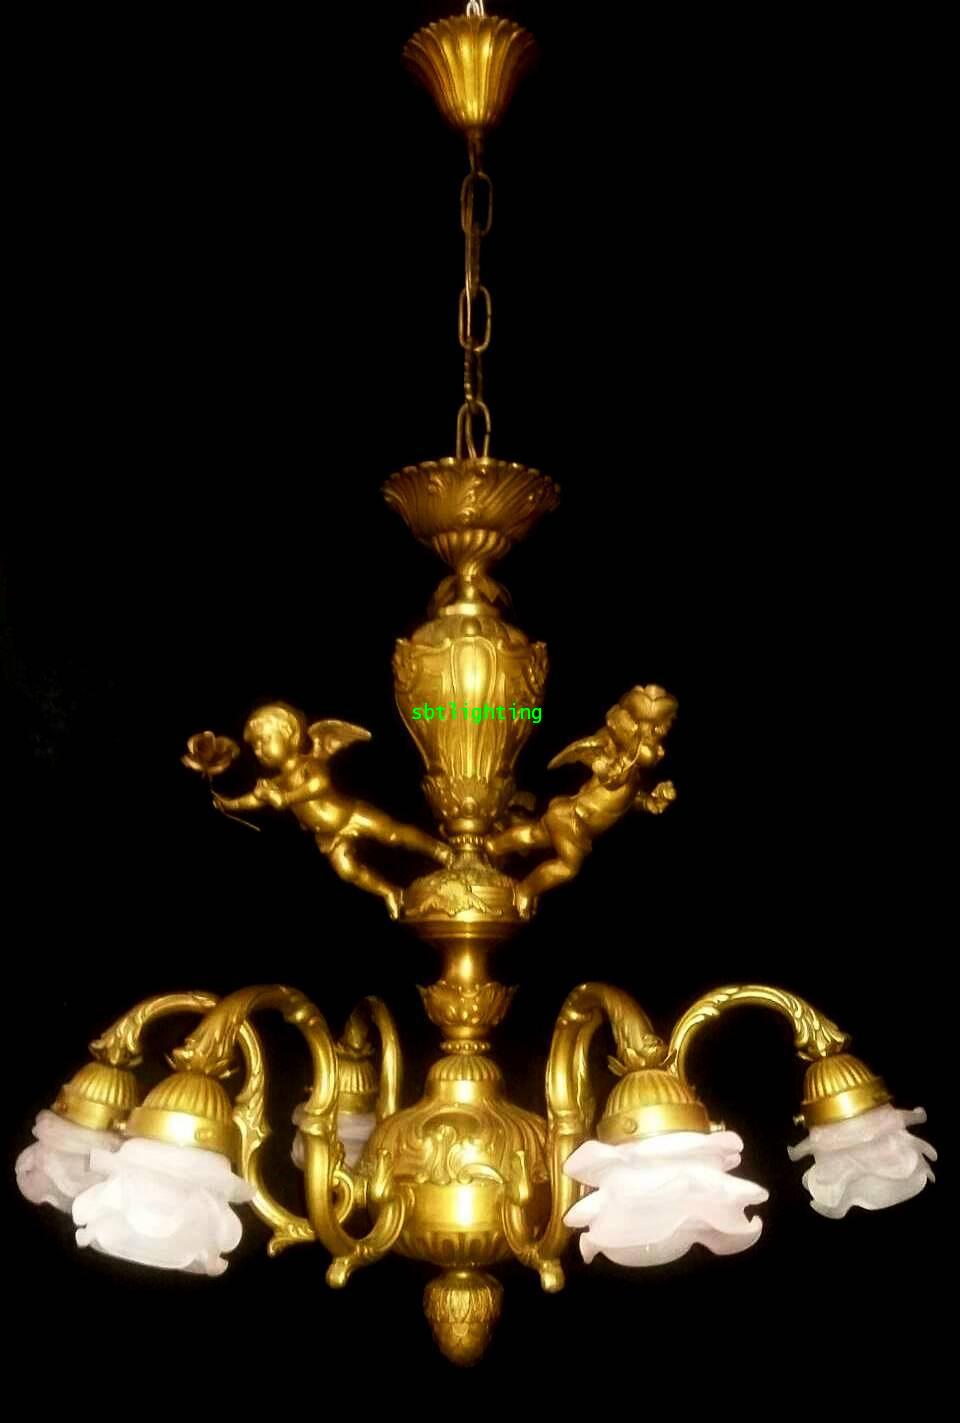 โคมไฟทองเหลือง ทองสำริด และโป๊ะแก้วโบราณ งานอิตาลี